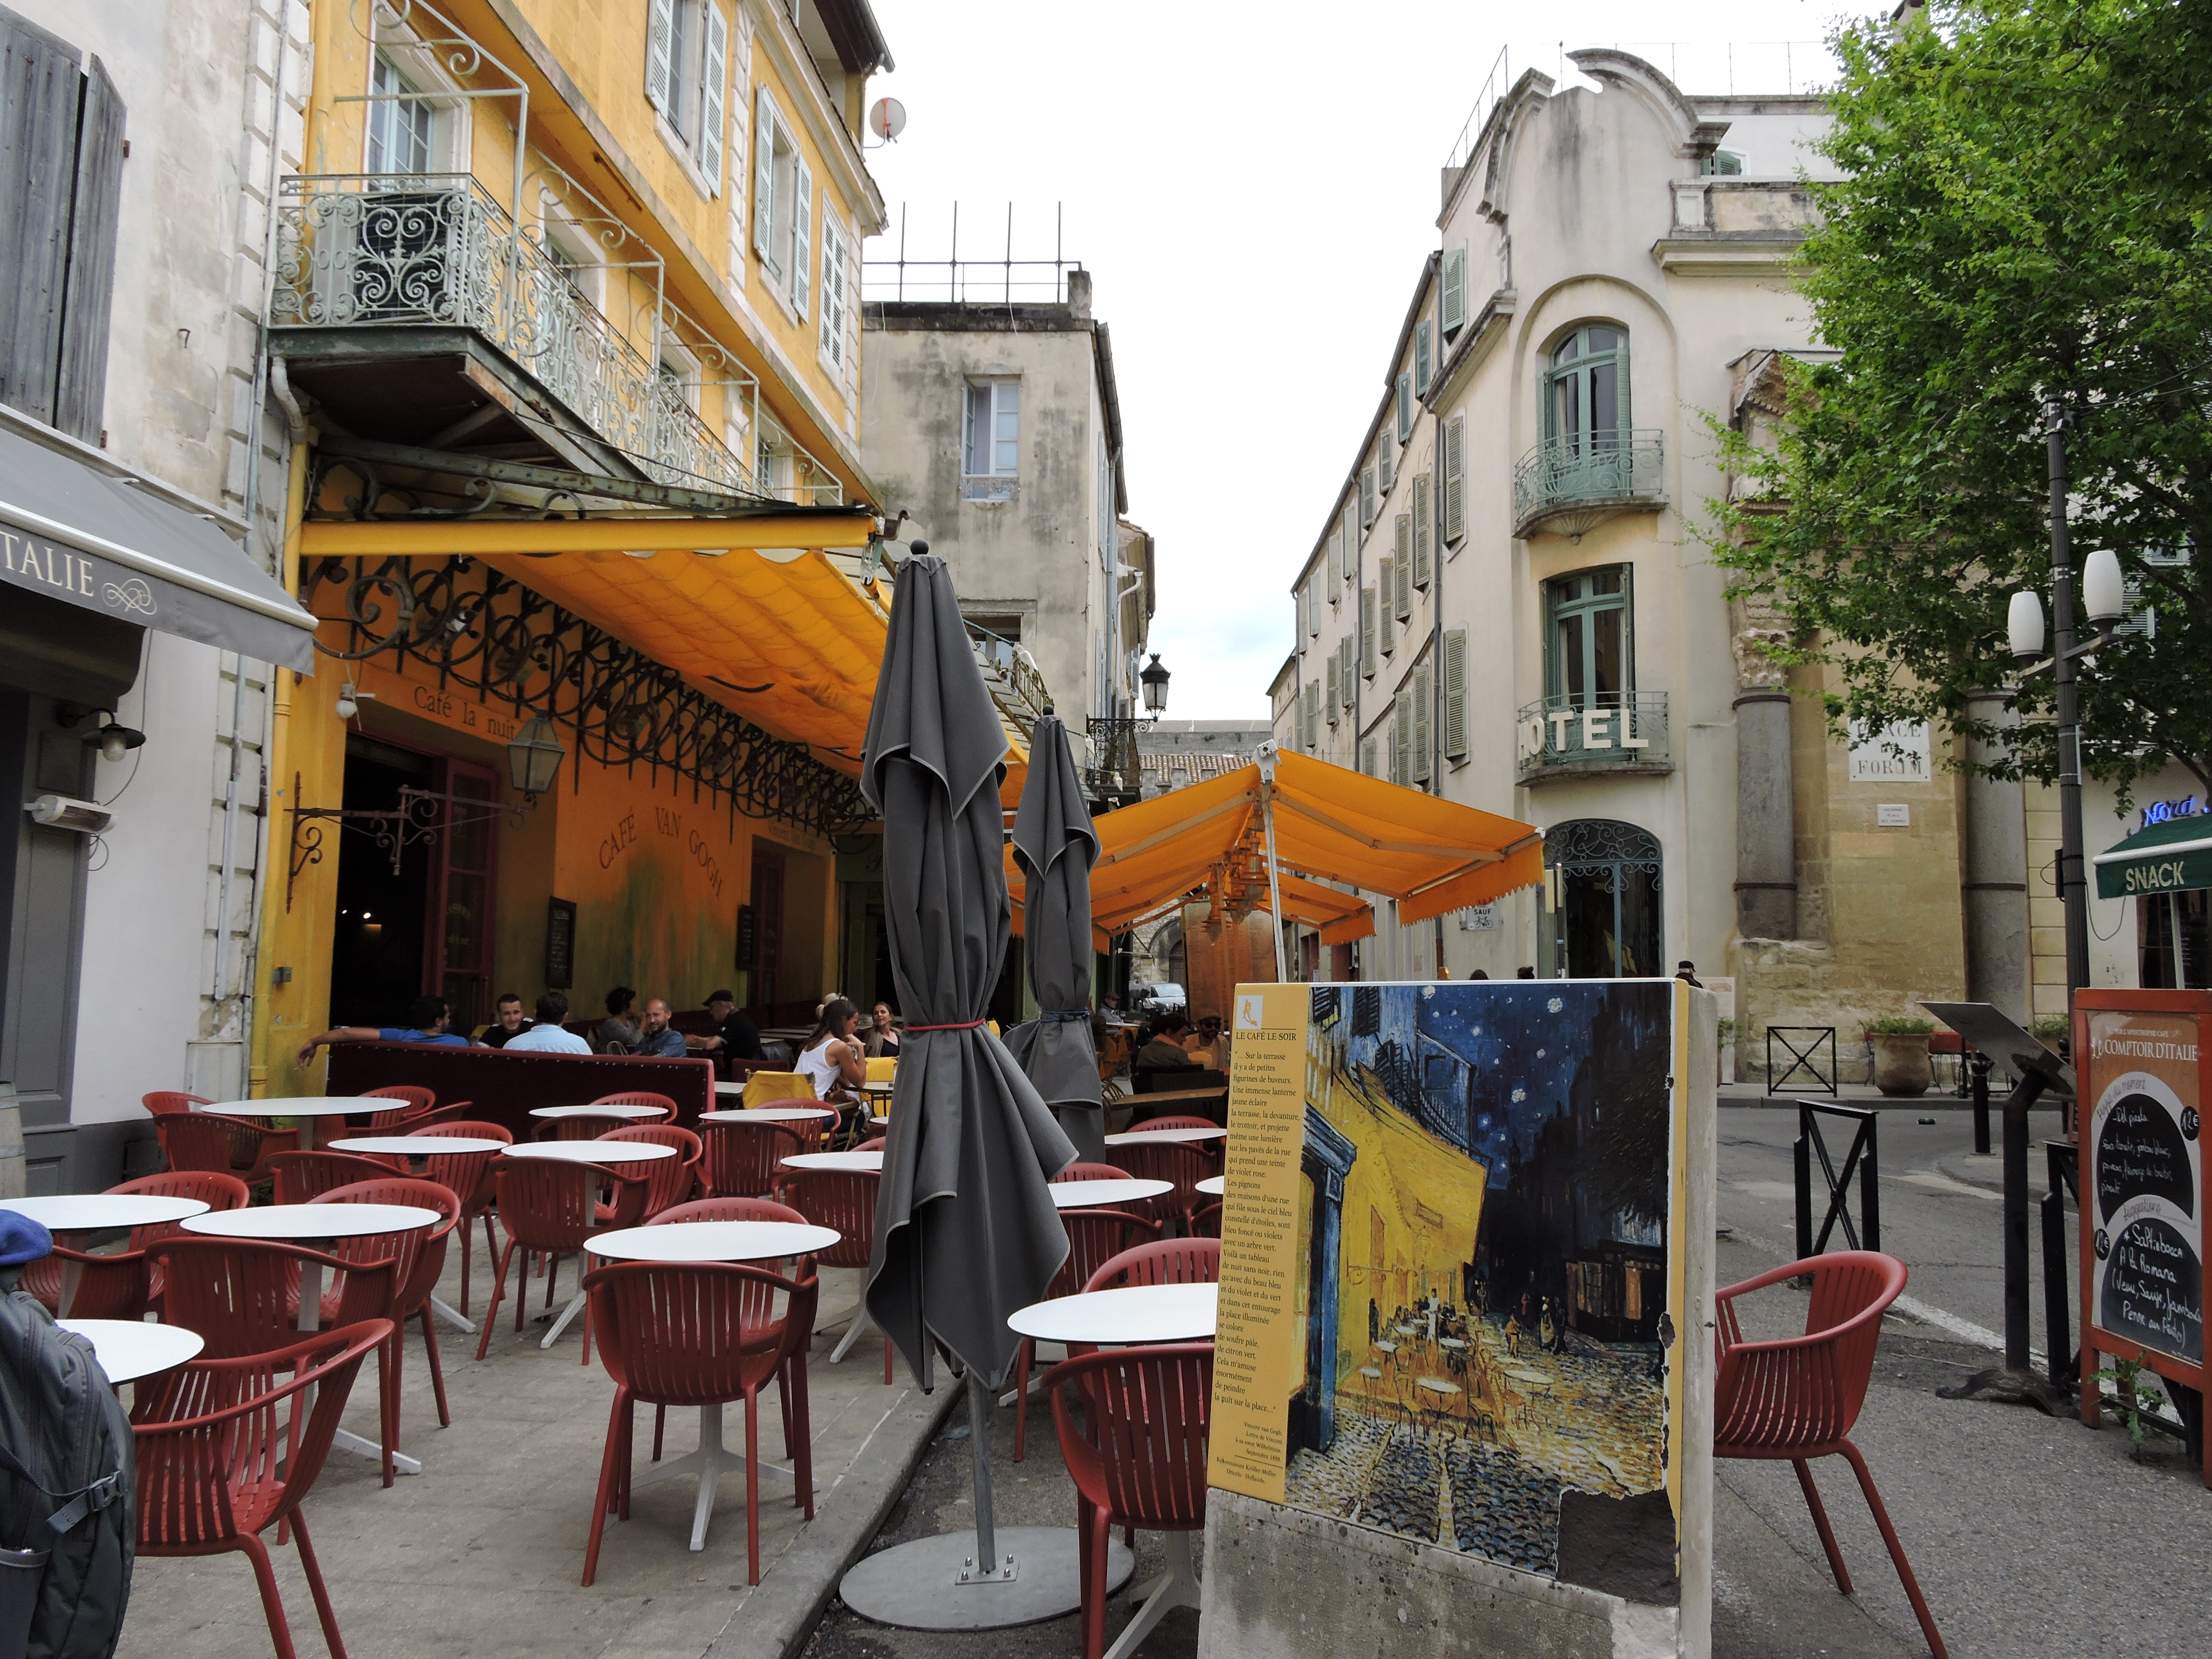 Le Cafe Terrace, Vincent Van Gogh